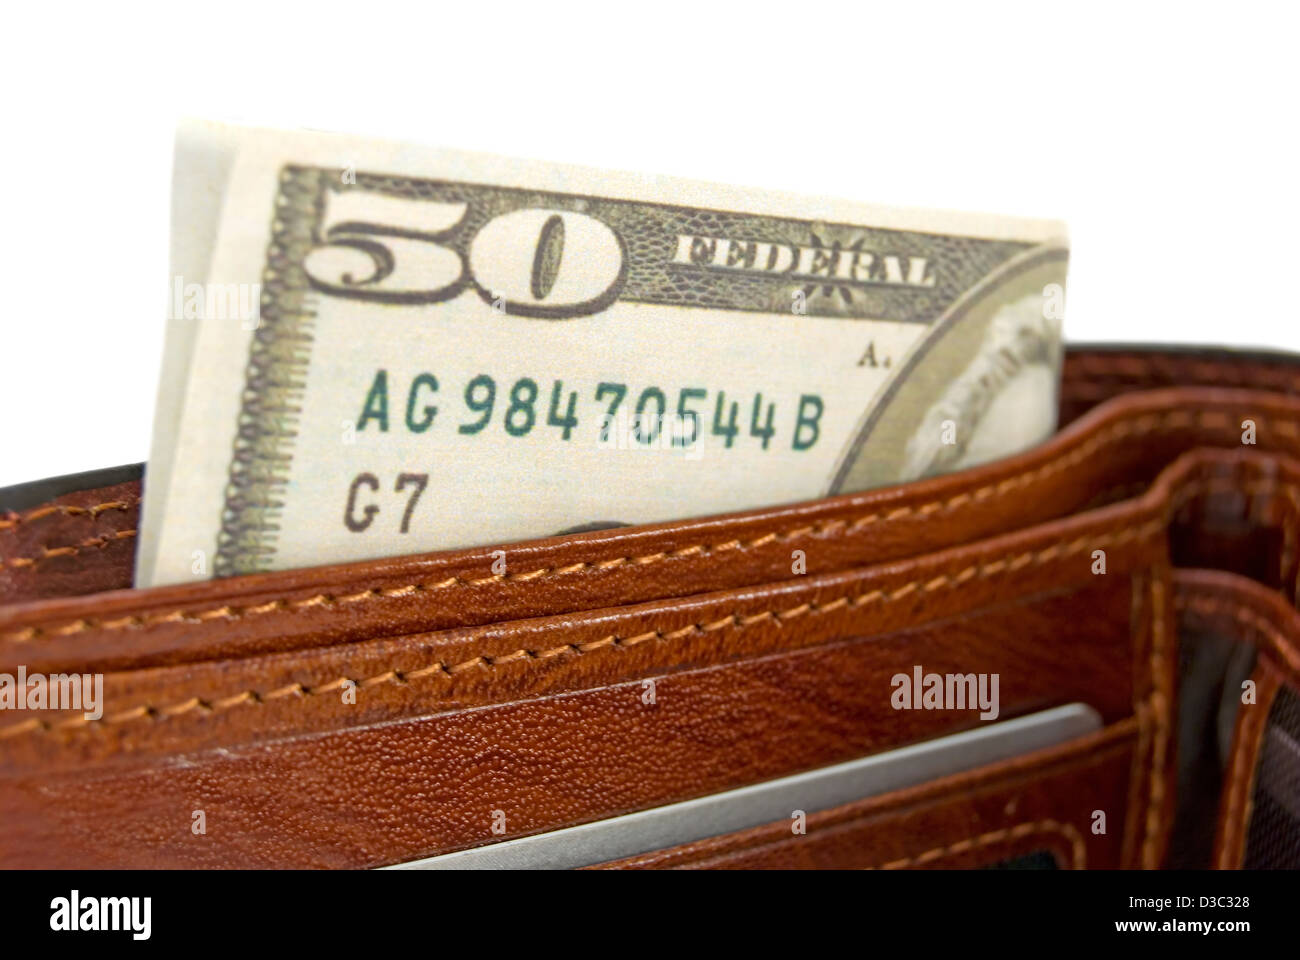 Le sac à main marron avec de l'argent est photographié un close-up Banque D'Images